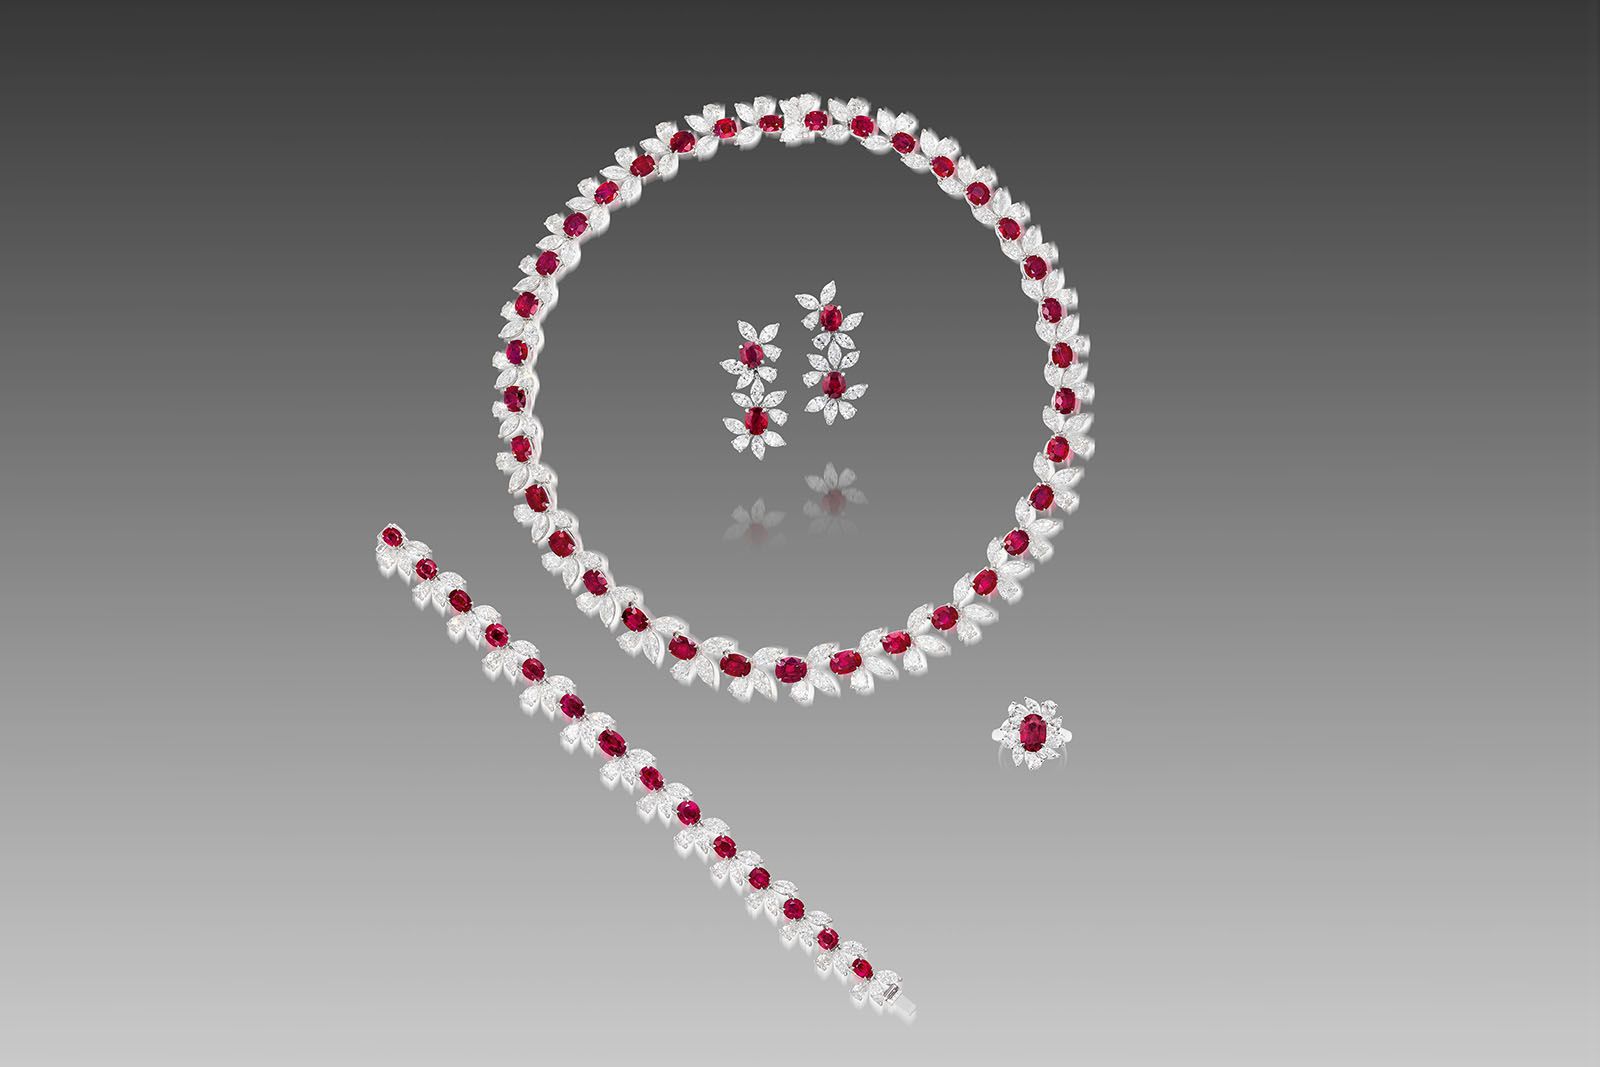 Драгоценности с бриллиантами и бирманскими рубинами, которые будут проданы в рамках аукциона Phillips Hong Kong в ноябре 2021 года